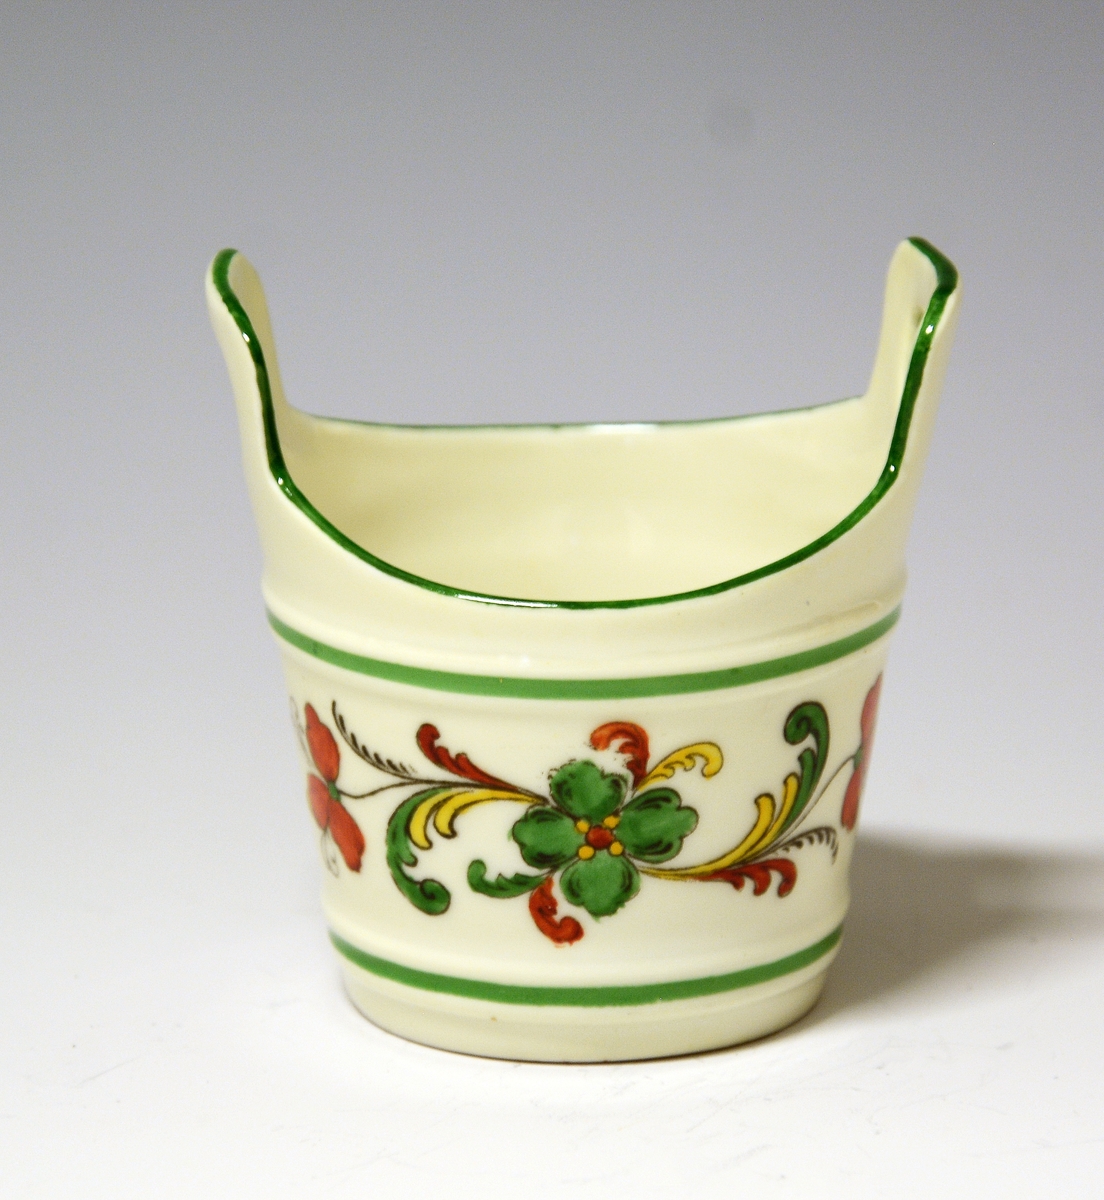 Liten kopp av porselen, formet som en smørstamp. Hvit glasur, også inni. På sidene rosemalt felt i sterke farger.
Modell: 1700
Dekor: 72679